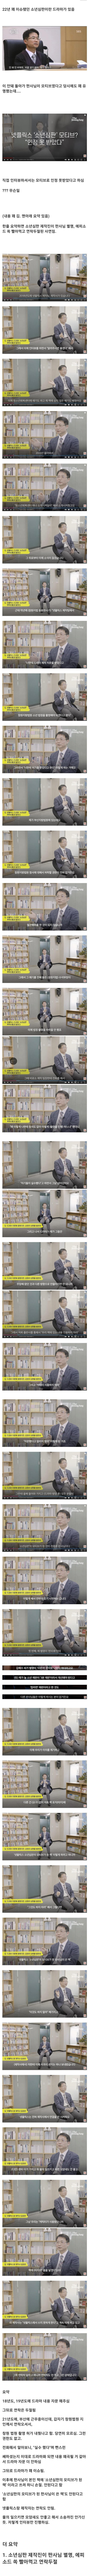 실화 소재만 쏙 빼먹고 먹튀한 드라마 제작진